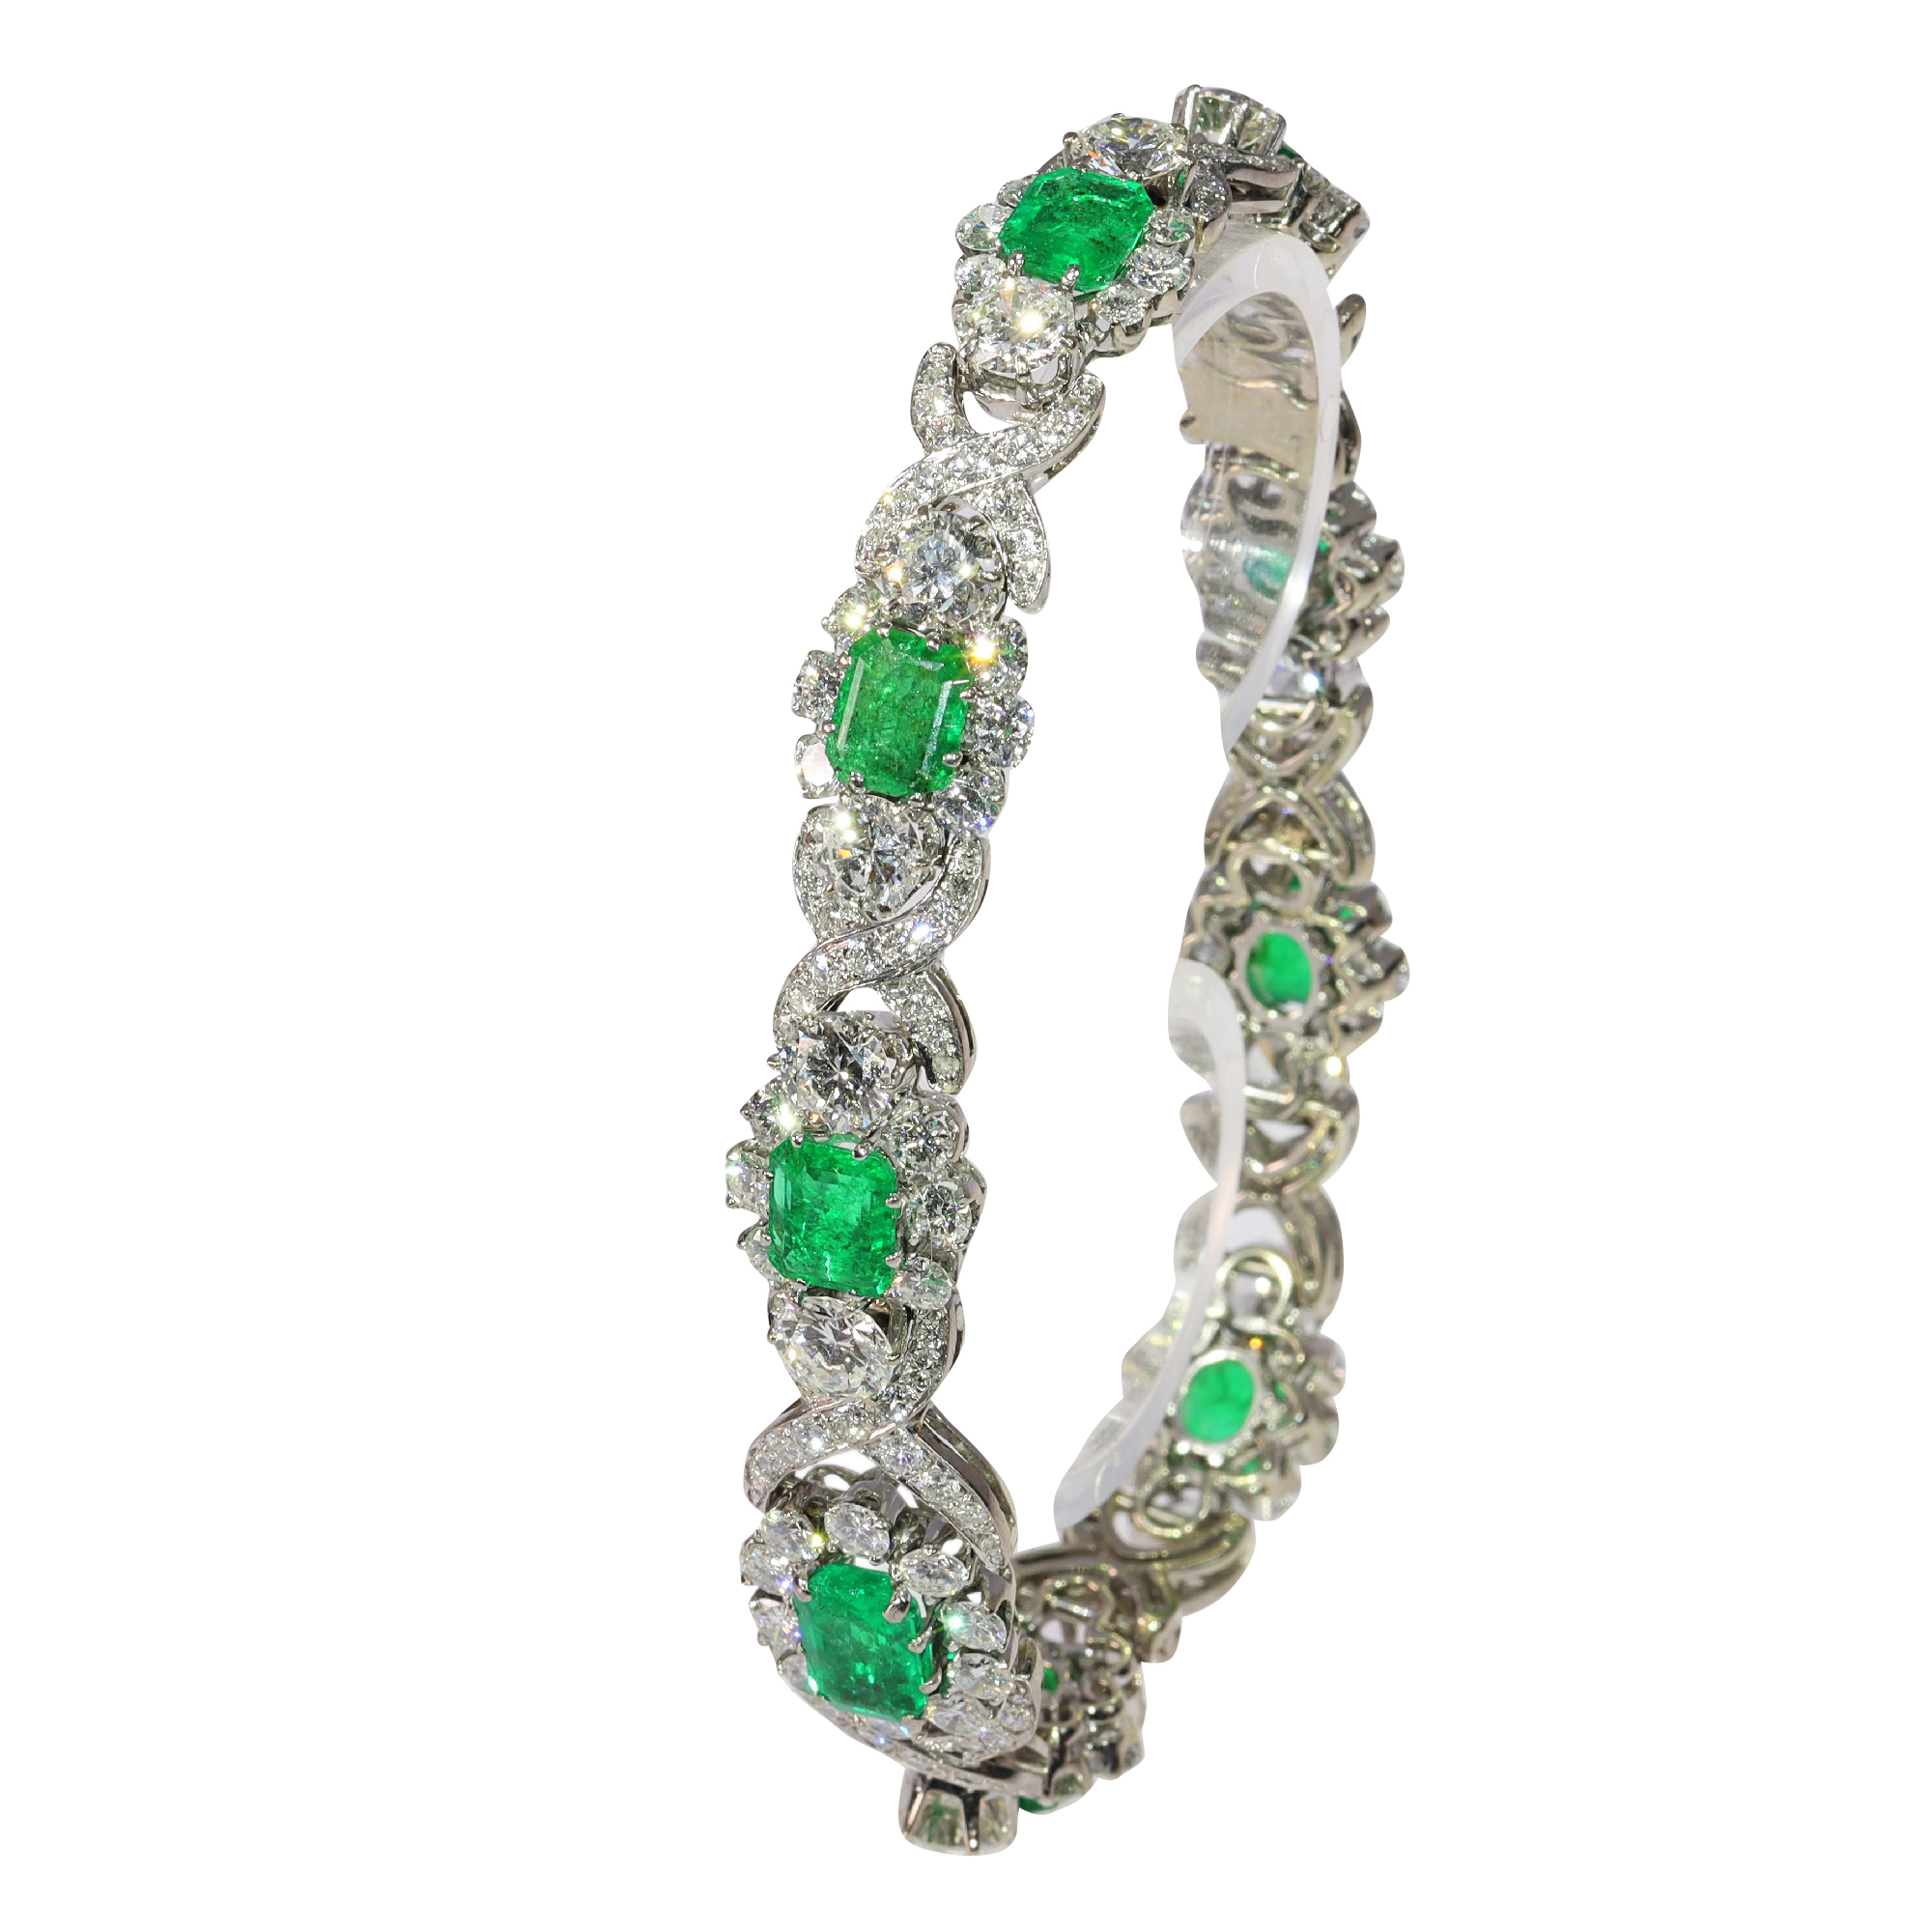 Luxurious Vintage Bracelet: 16 Carats Diamonds, 7 Carats Colombian Emeralds